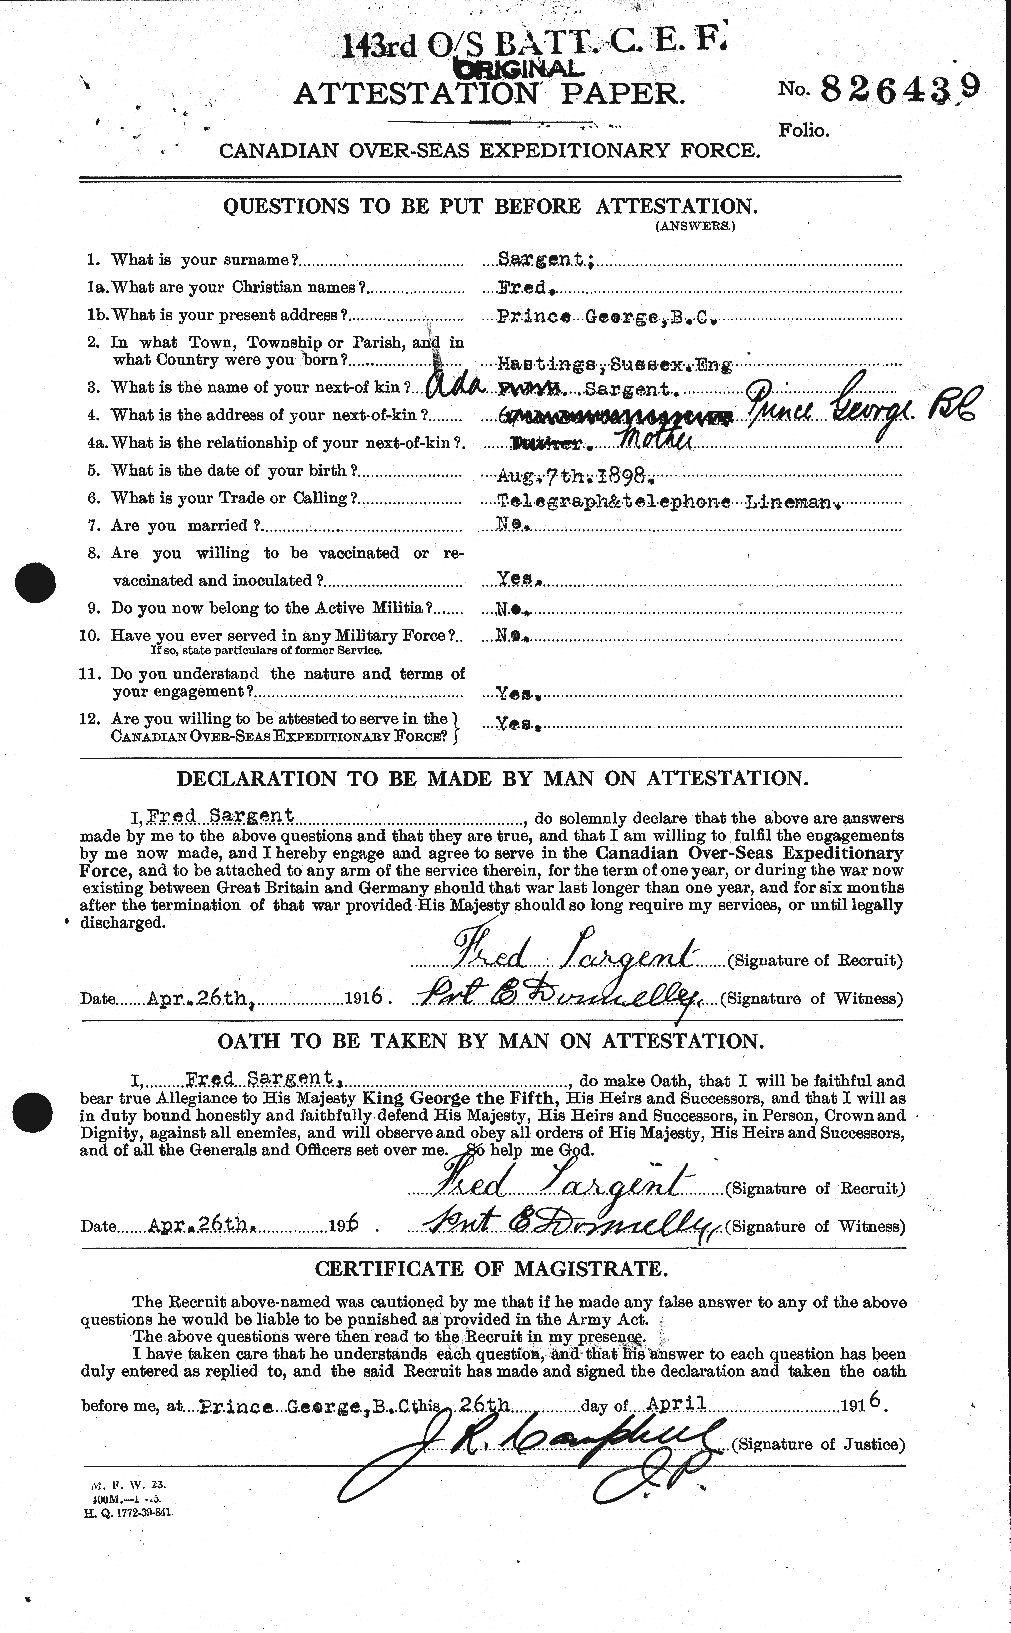 Dossiers du Personnel de la Première Guerre mondiale - CEC 079157a